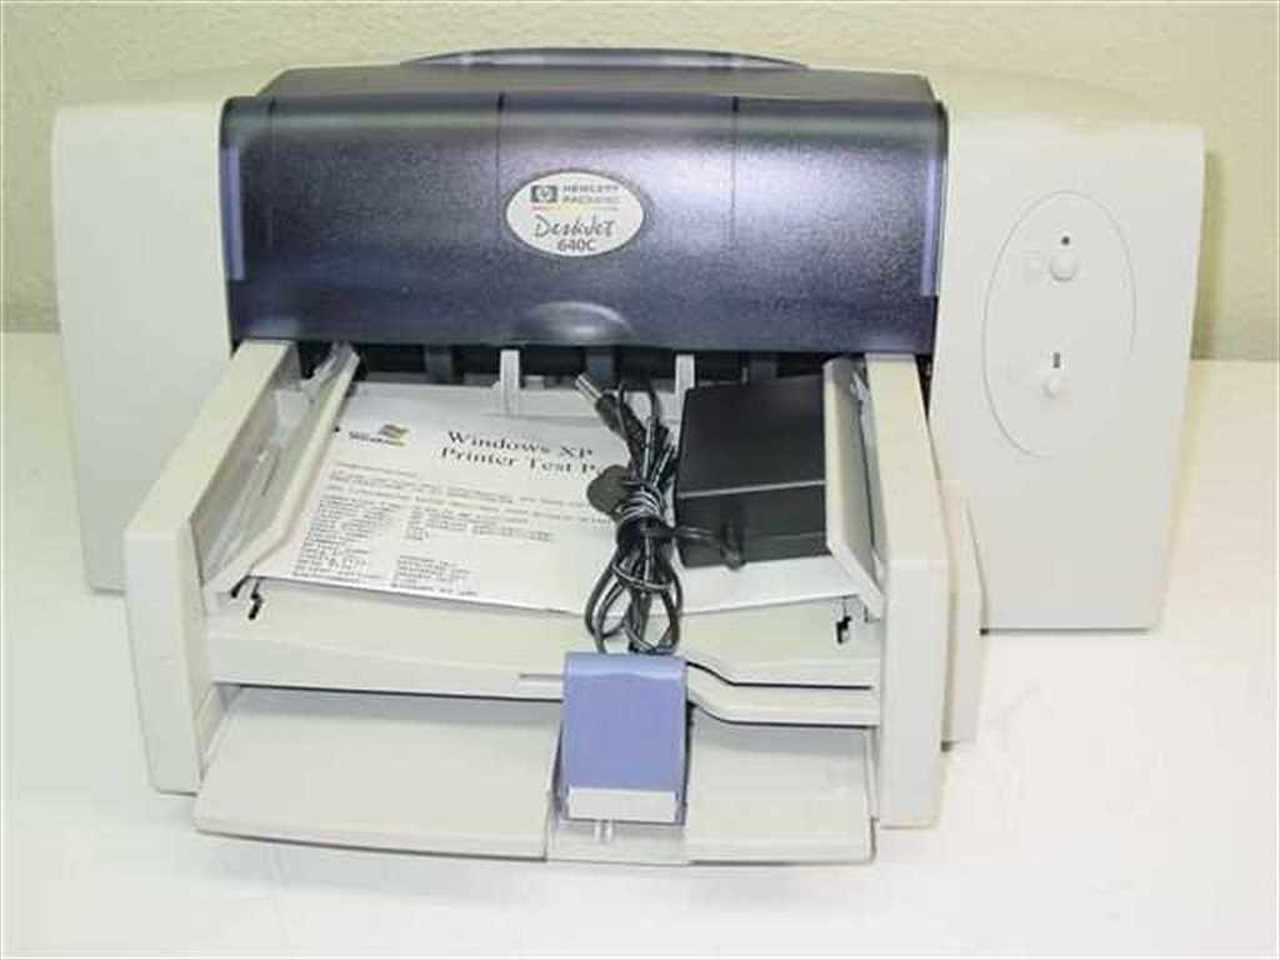 hewlett packard printer driver for mac